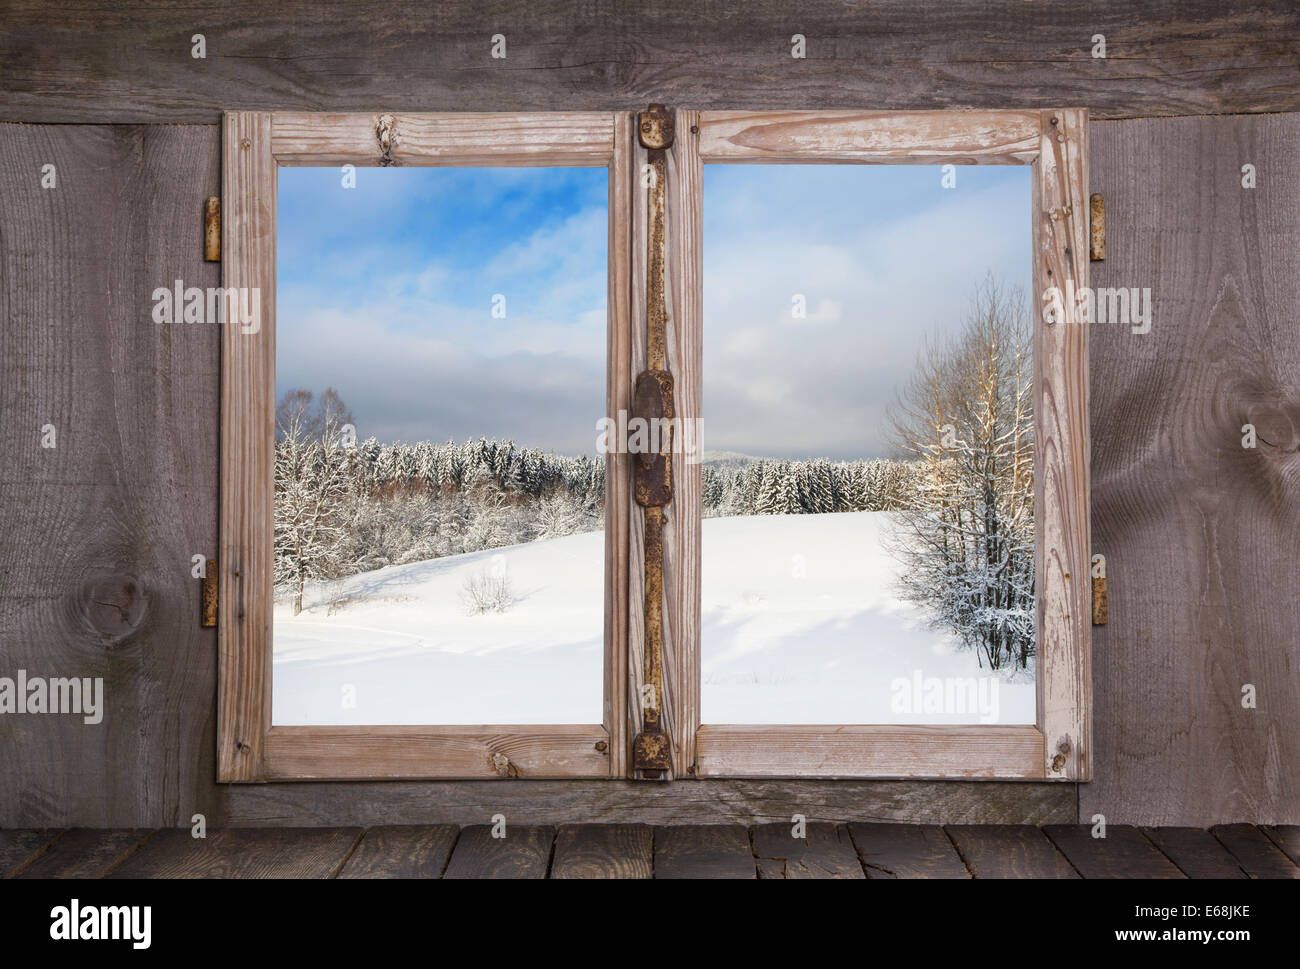 Paesaggio Innevato in gennaio. La vista di un vecchio rustico finestra in legno. Foto Stock